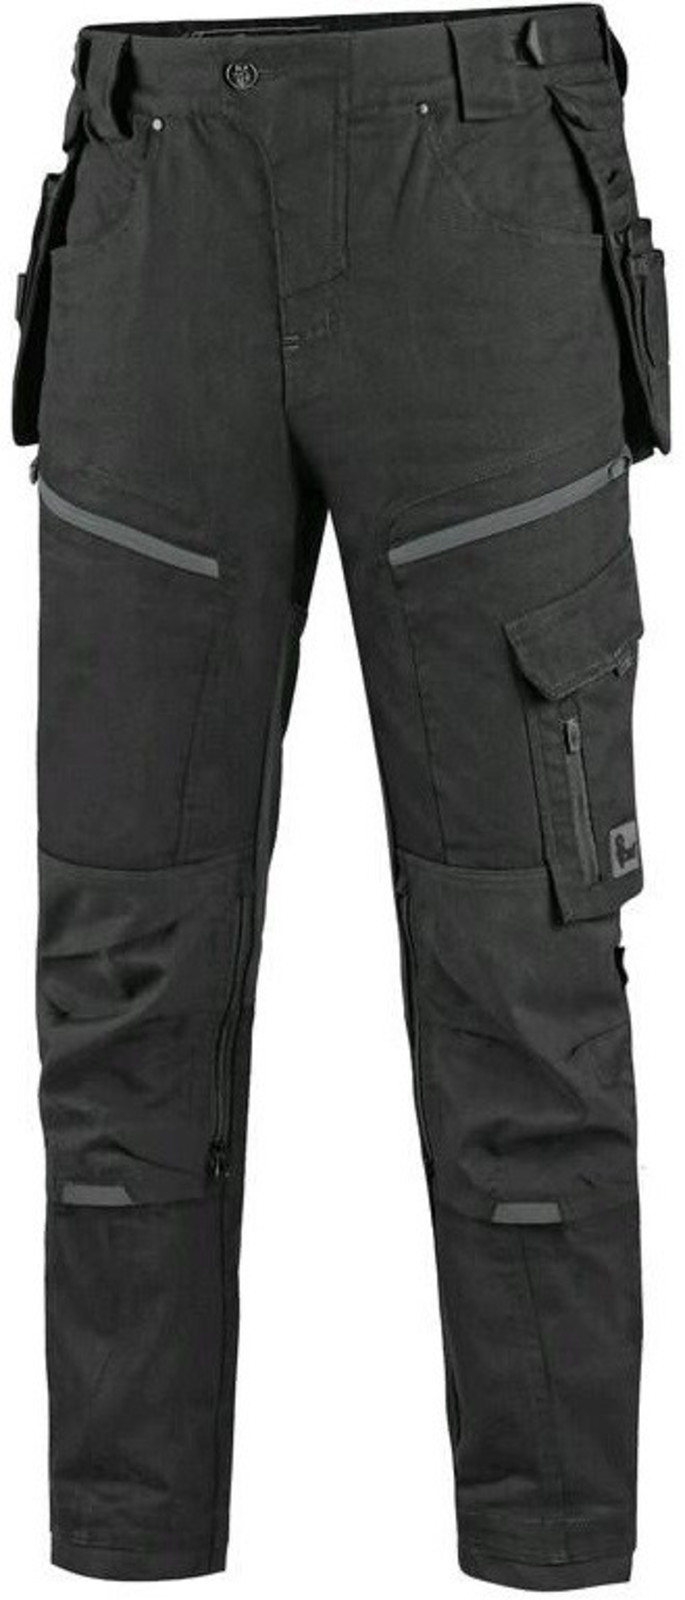 Pánske pracovné nohavice CXS Leonis - veľkosť: 54, farba: čierna/sivá